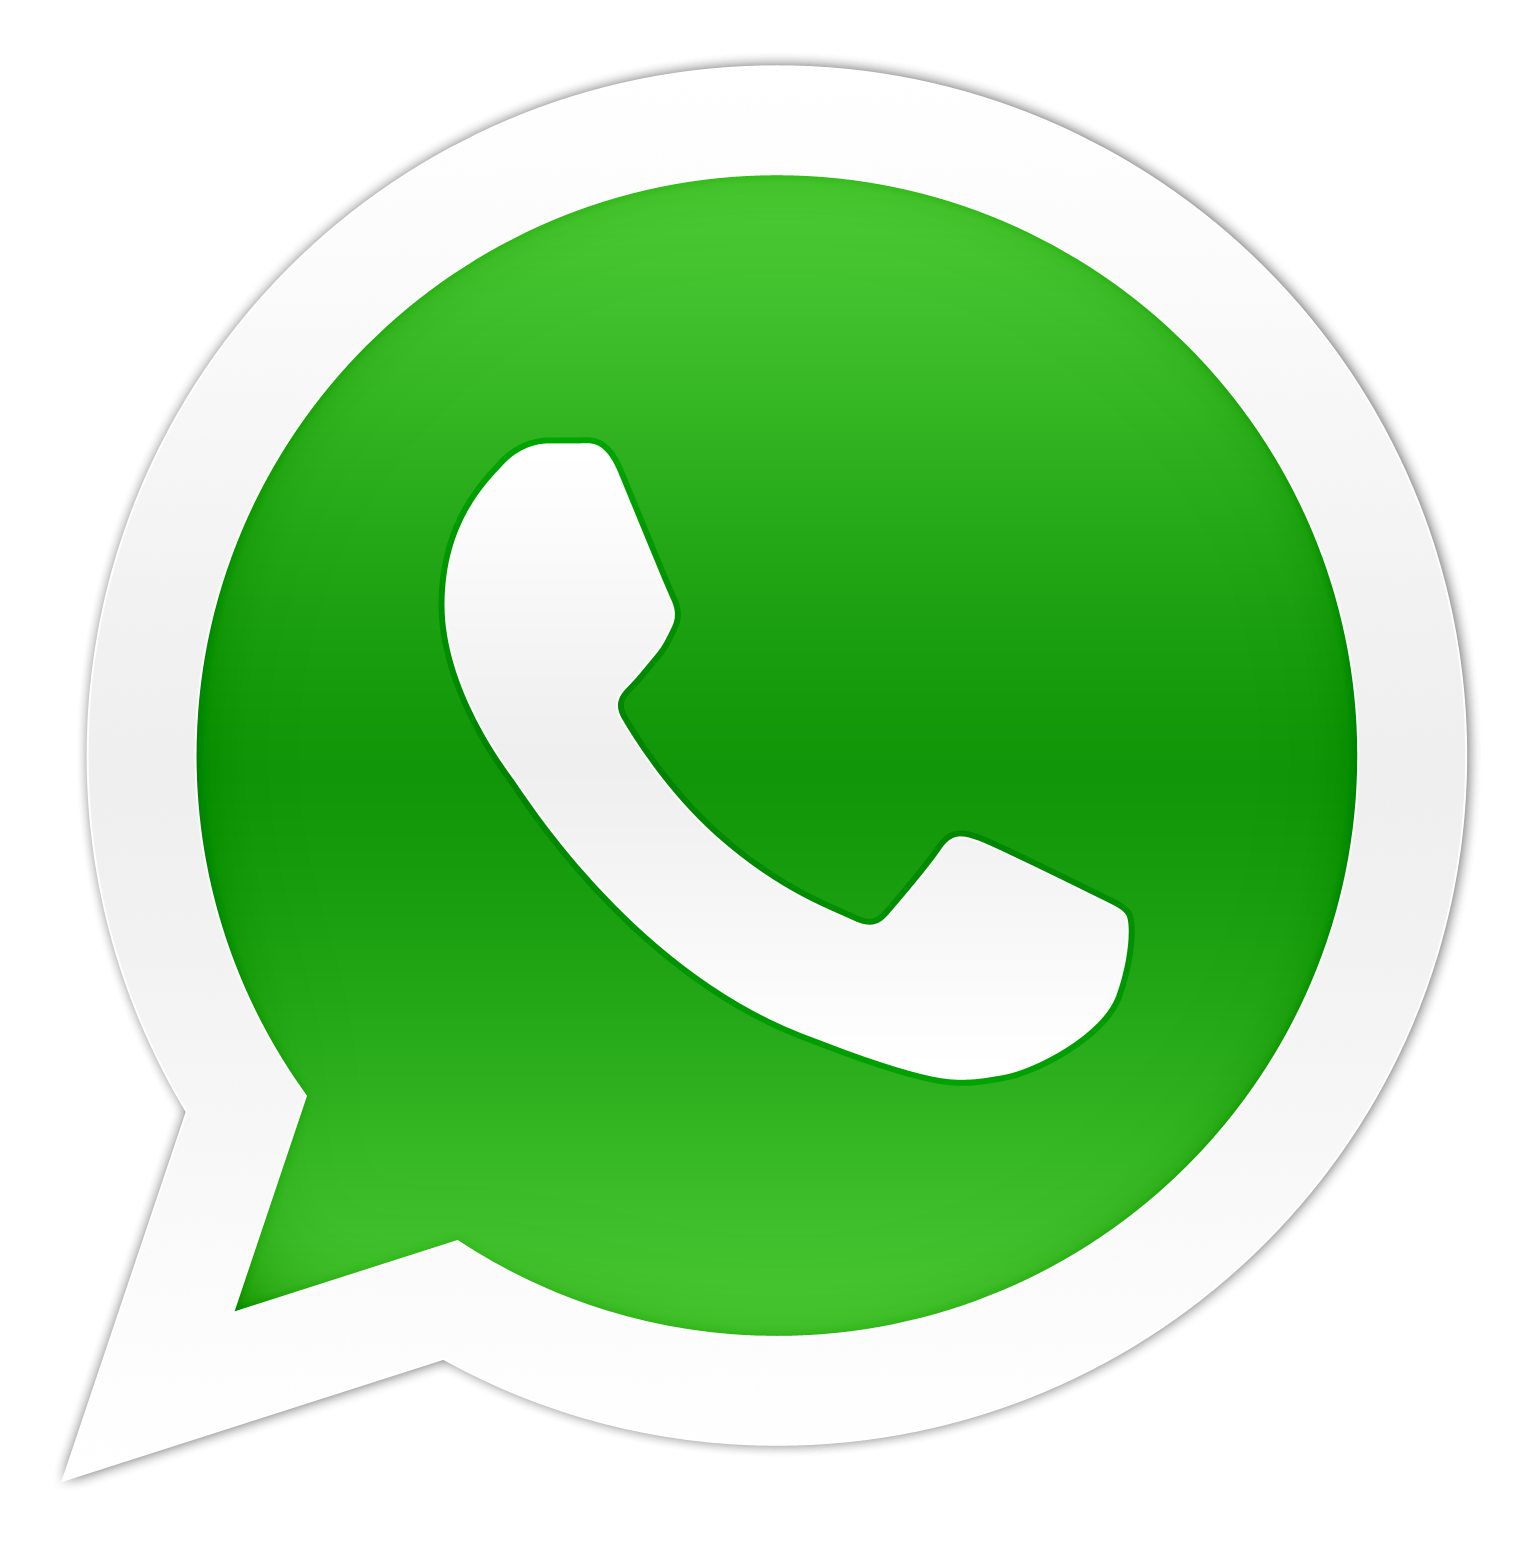 Logotipo do whatsapp.